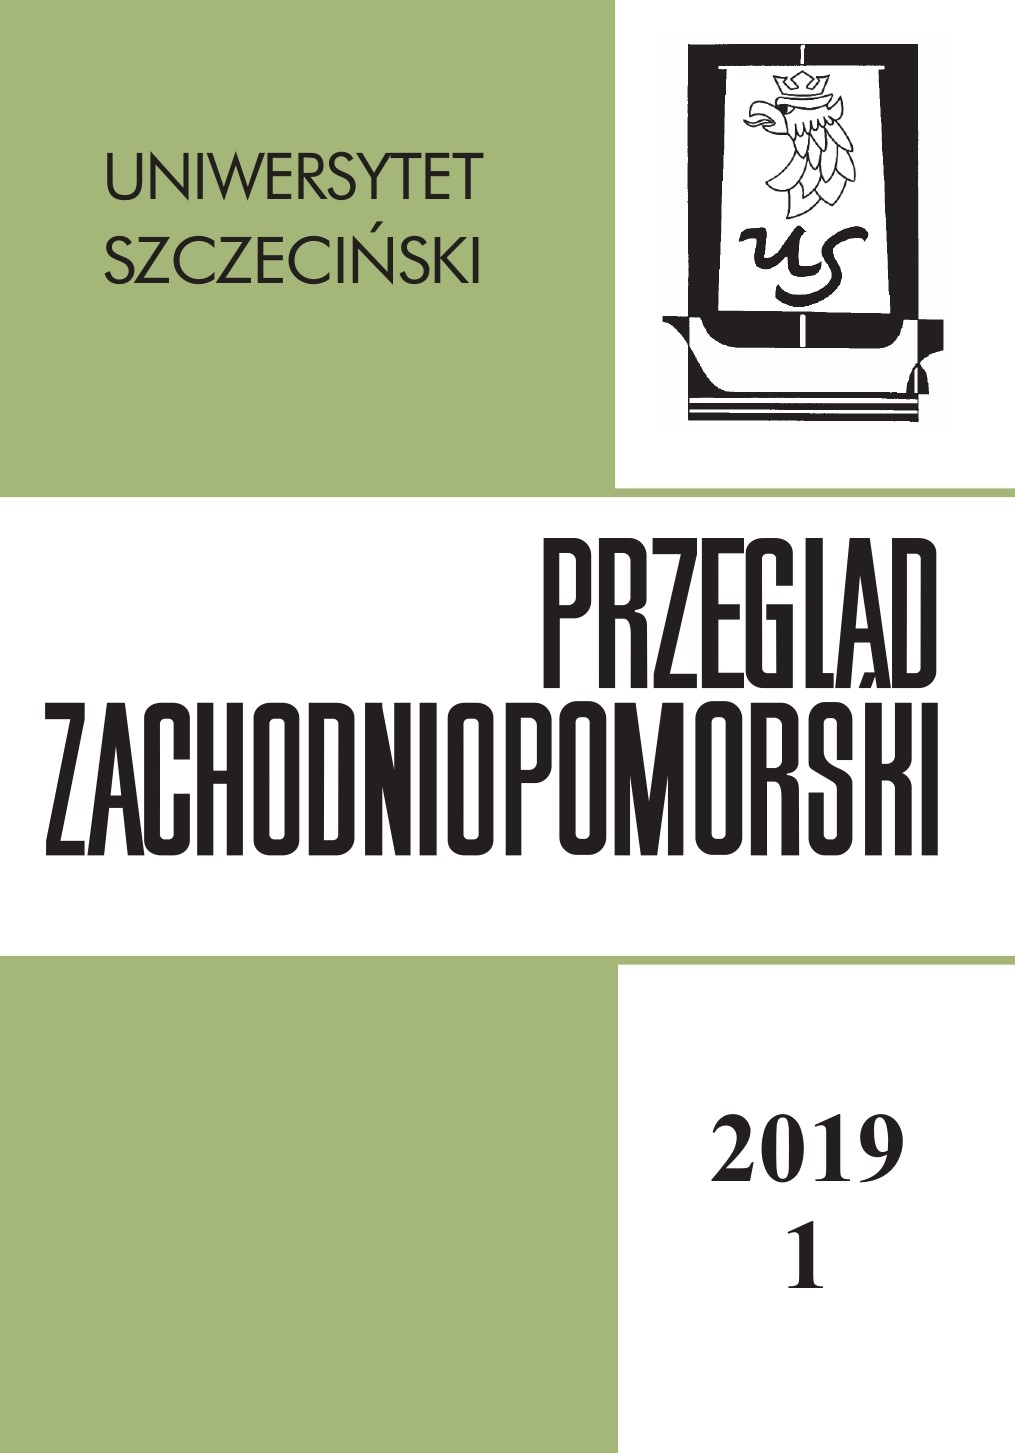 Szczecińskie czasopisma w przestrzeni społecznej, red. D. Dąbrowska, P. Olechowska, I. Sokalski, Książnica Pomorska, Szczecin 2019 Cover Image